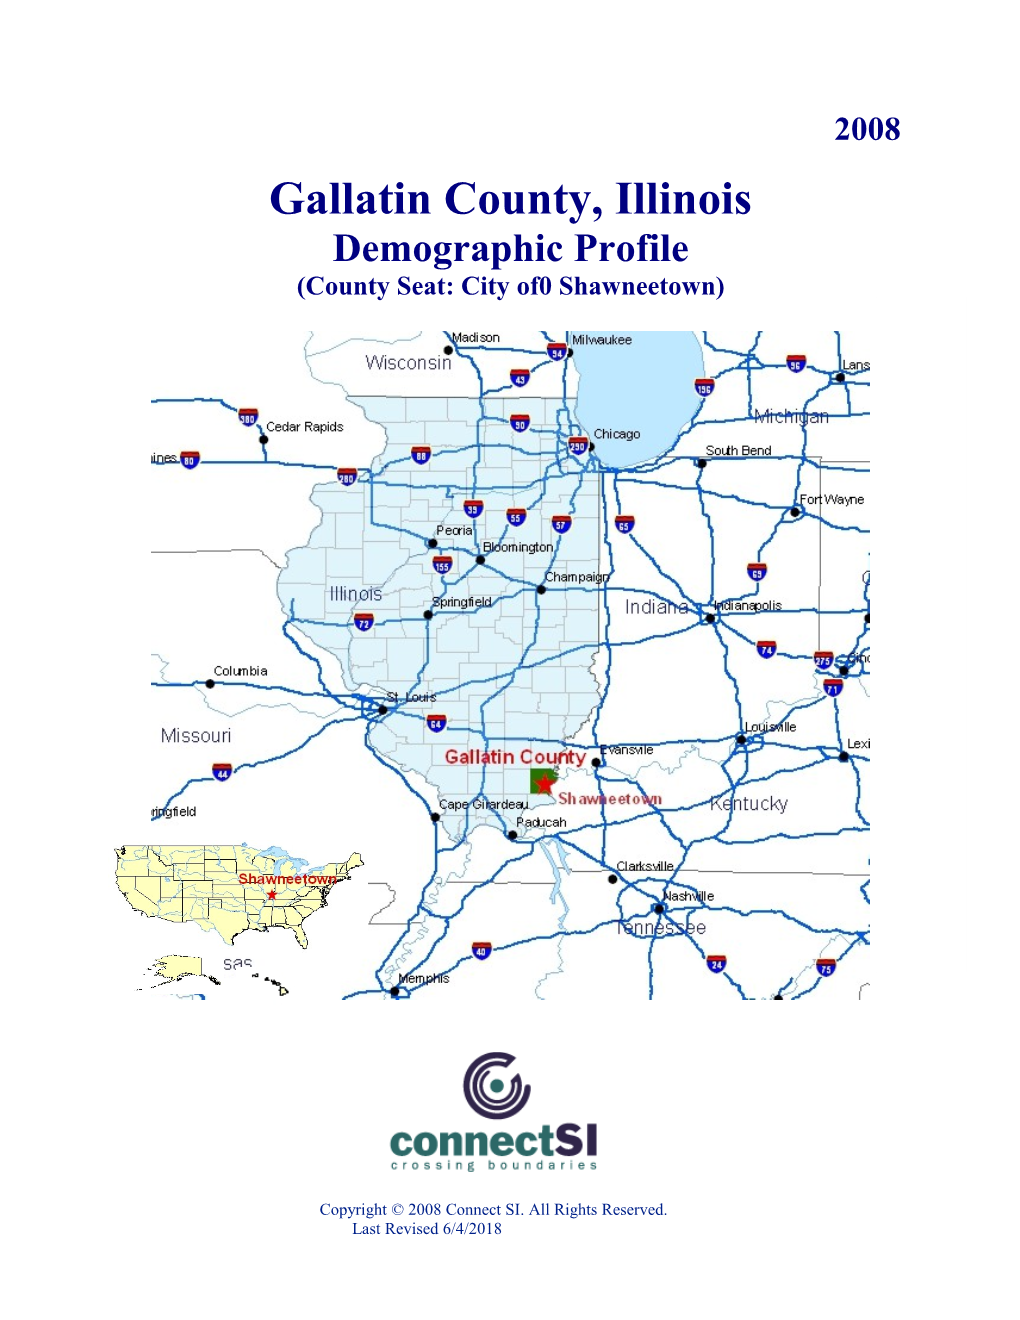 Gallatin County, Illinois